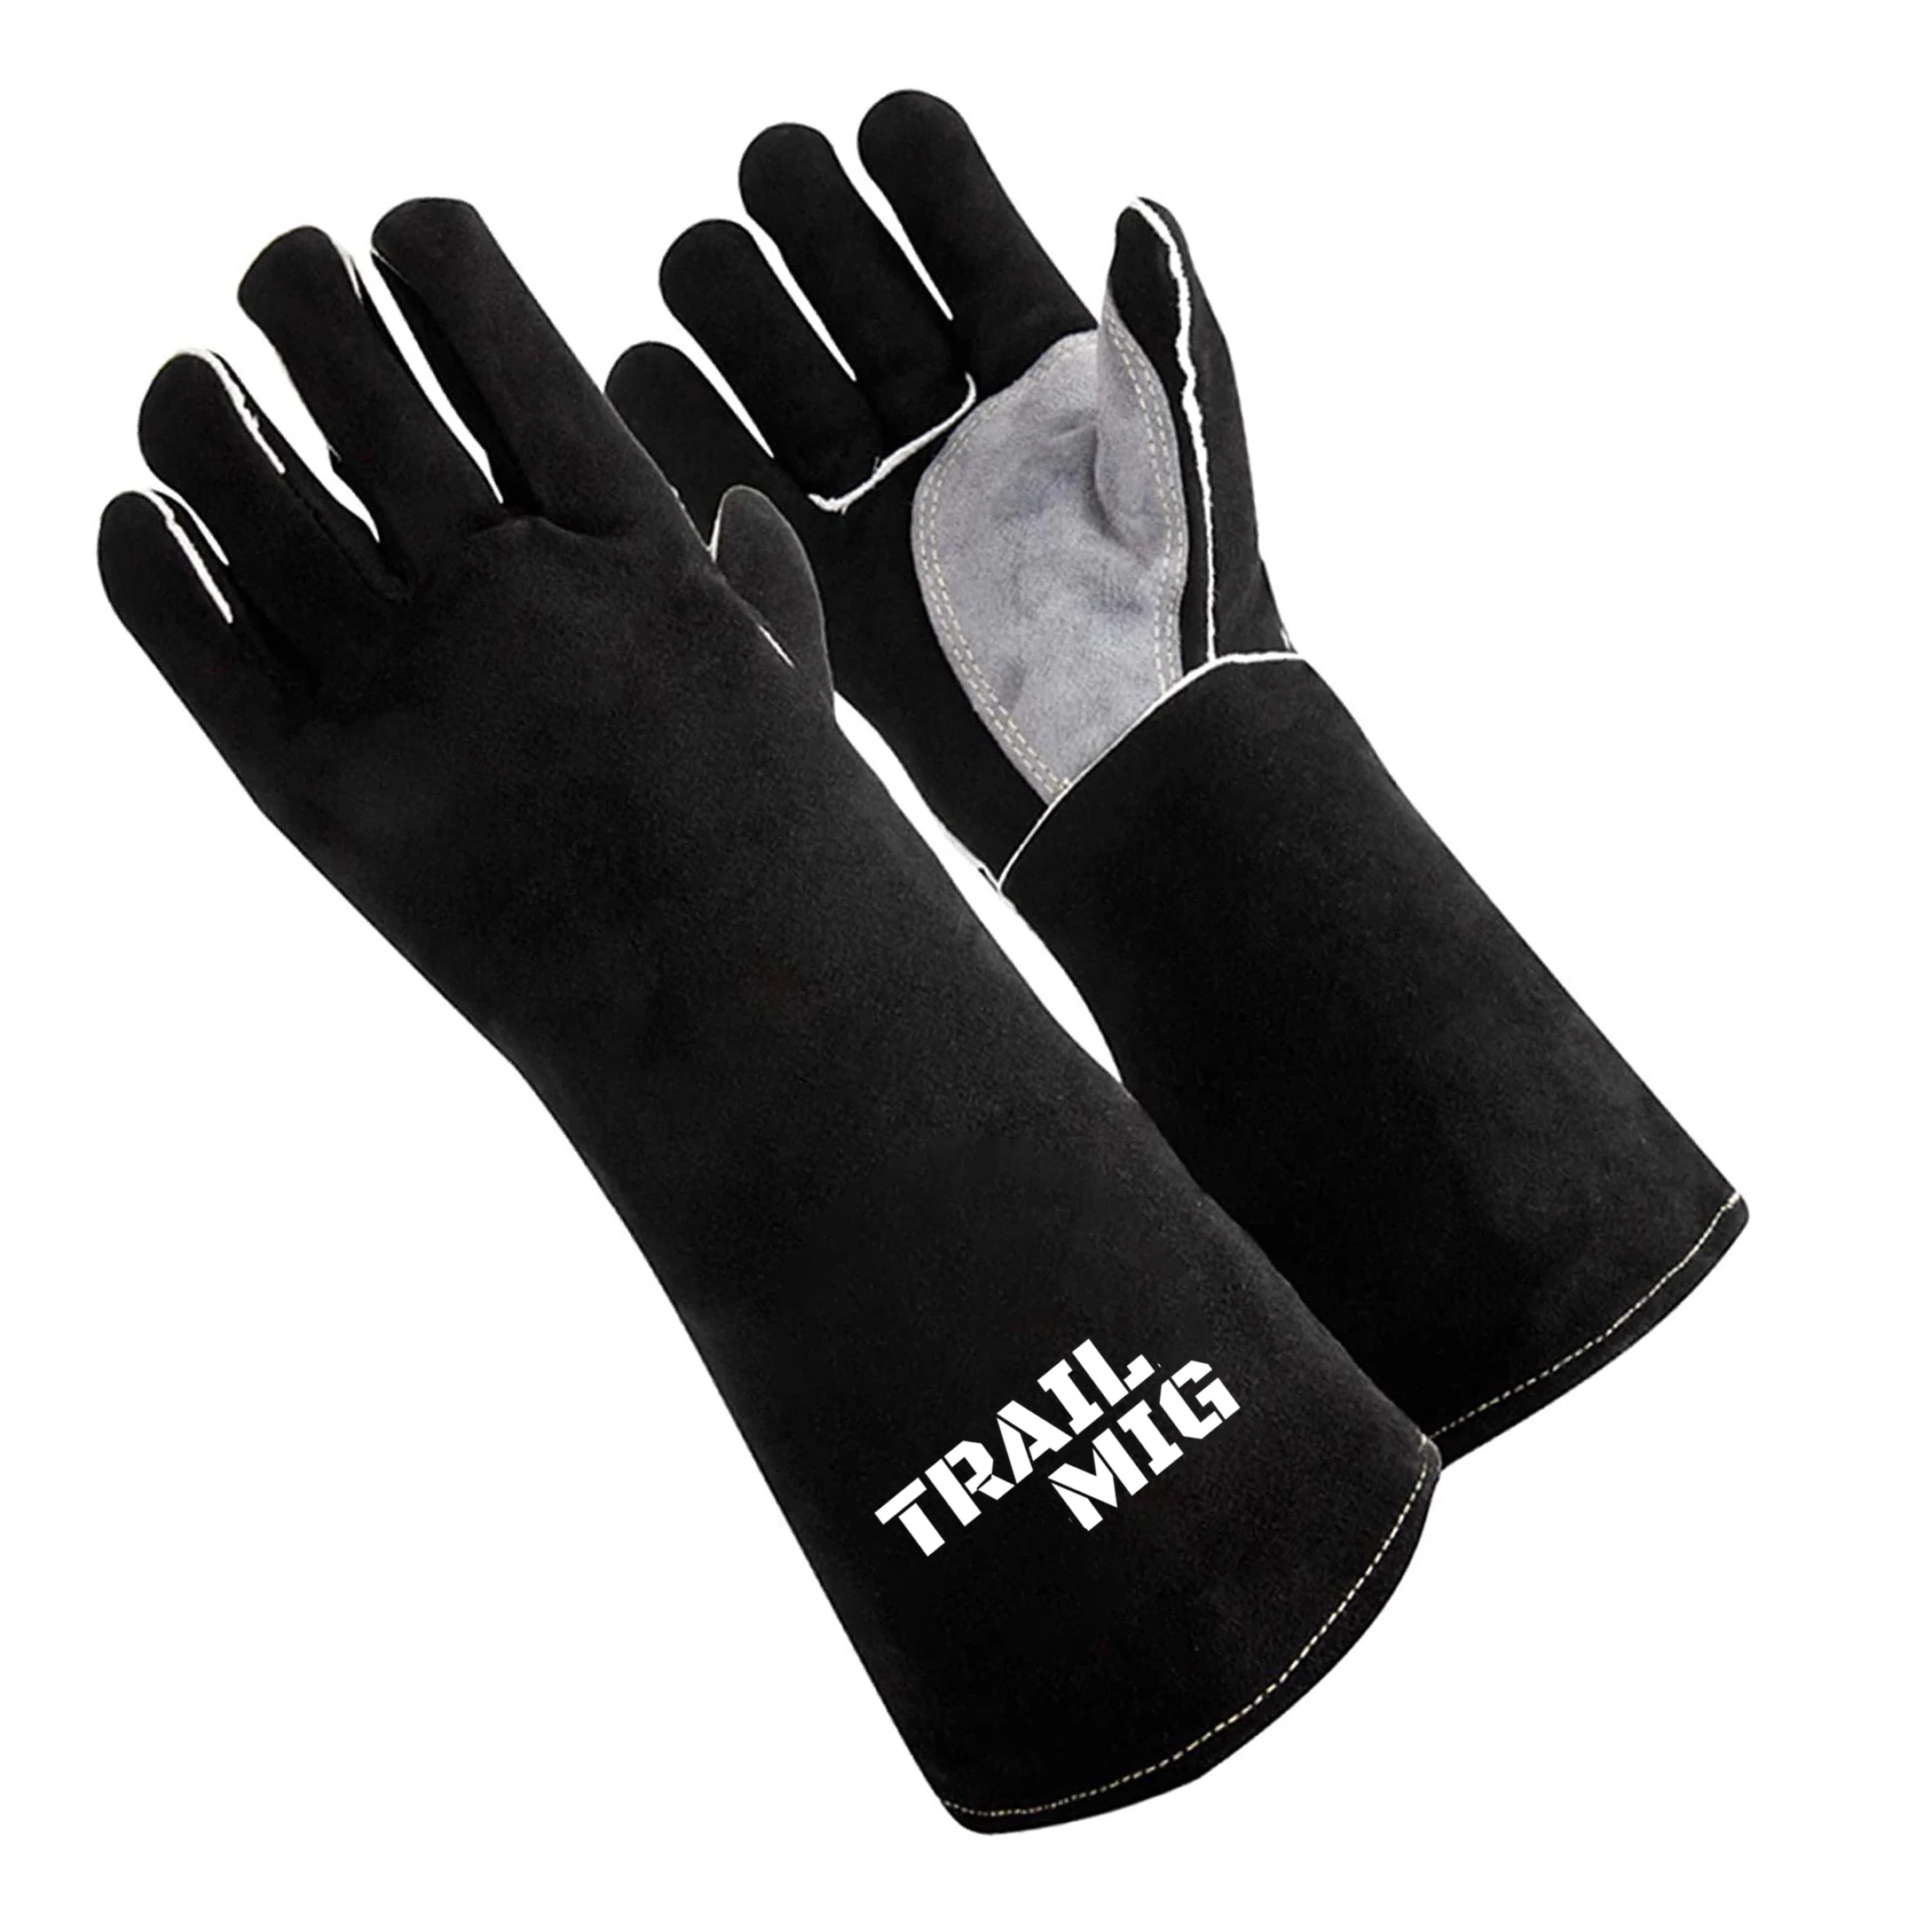 TRAILGLOVES Welding Gloves